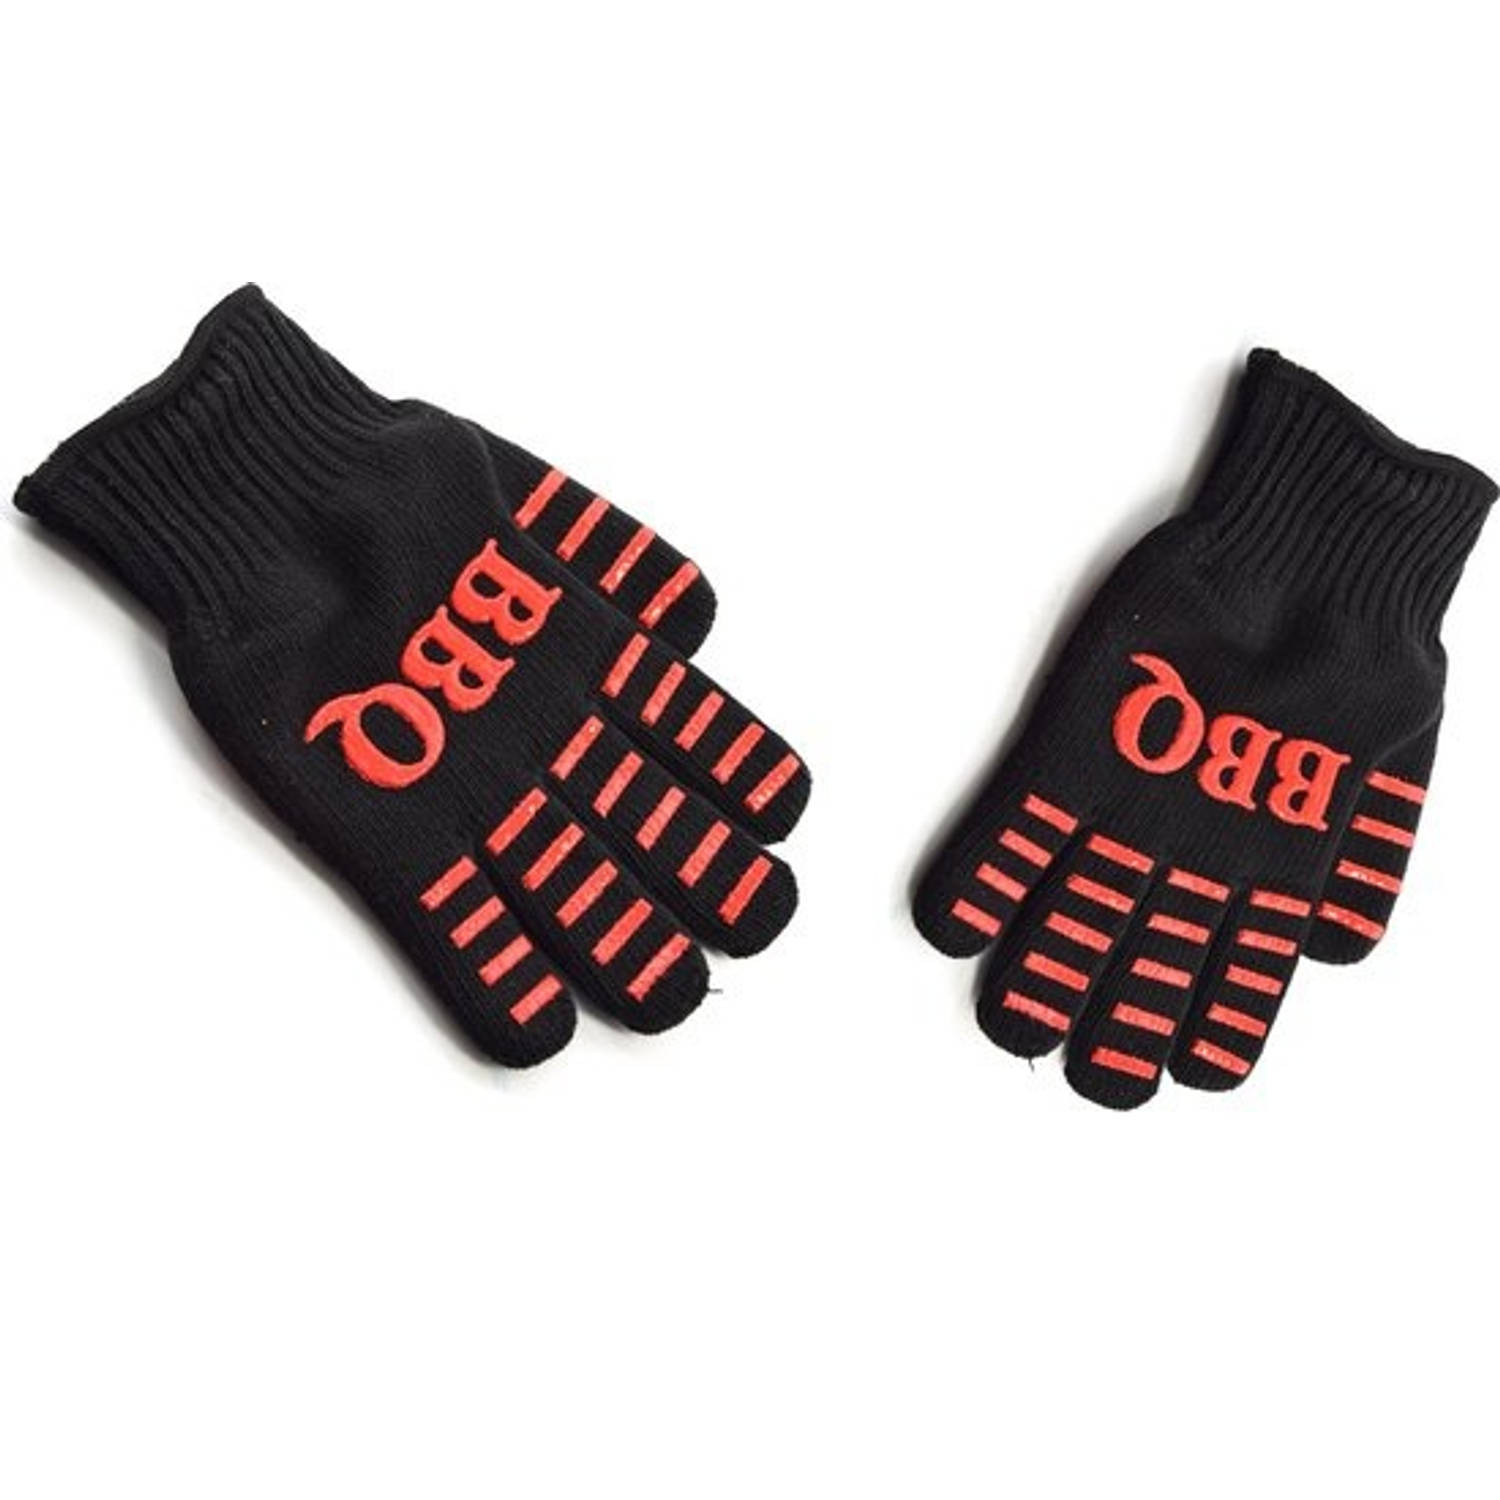 Hittebestendige handschoenen - 2 stuks - Ovenwanten - BBQ - Beschermend - Oven - Antislip - Barbecue - BBQ handschoenen